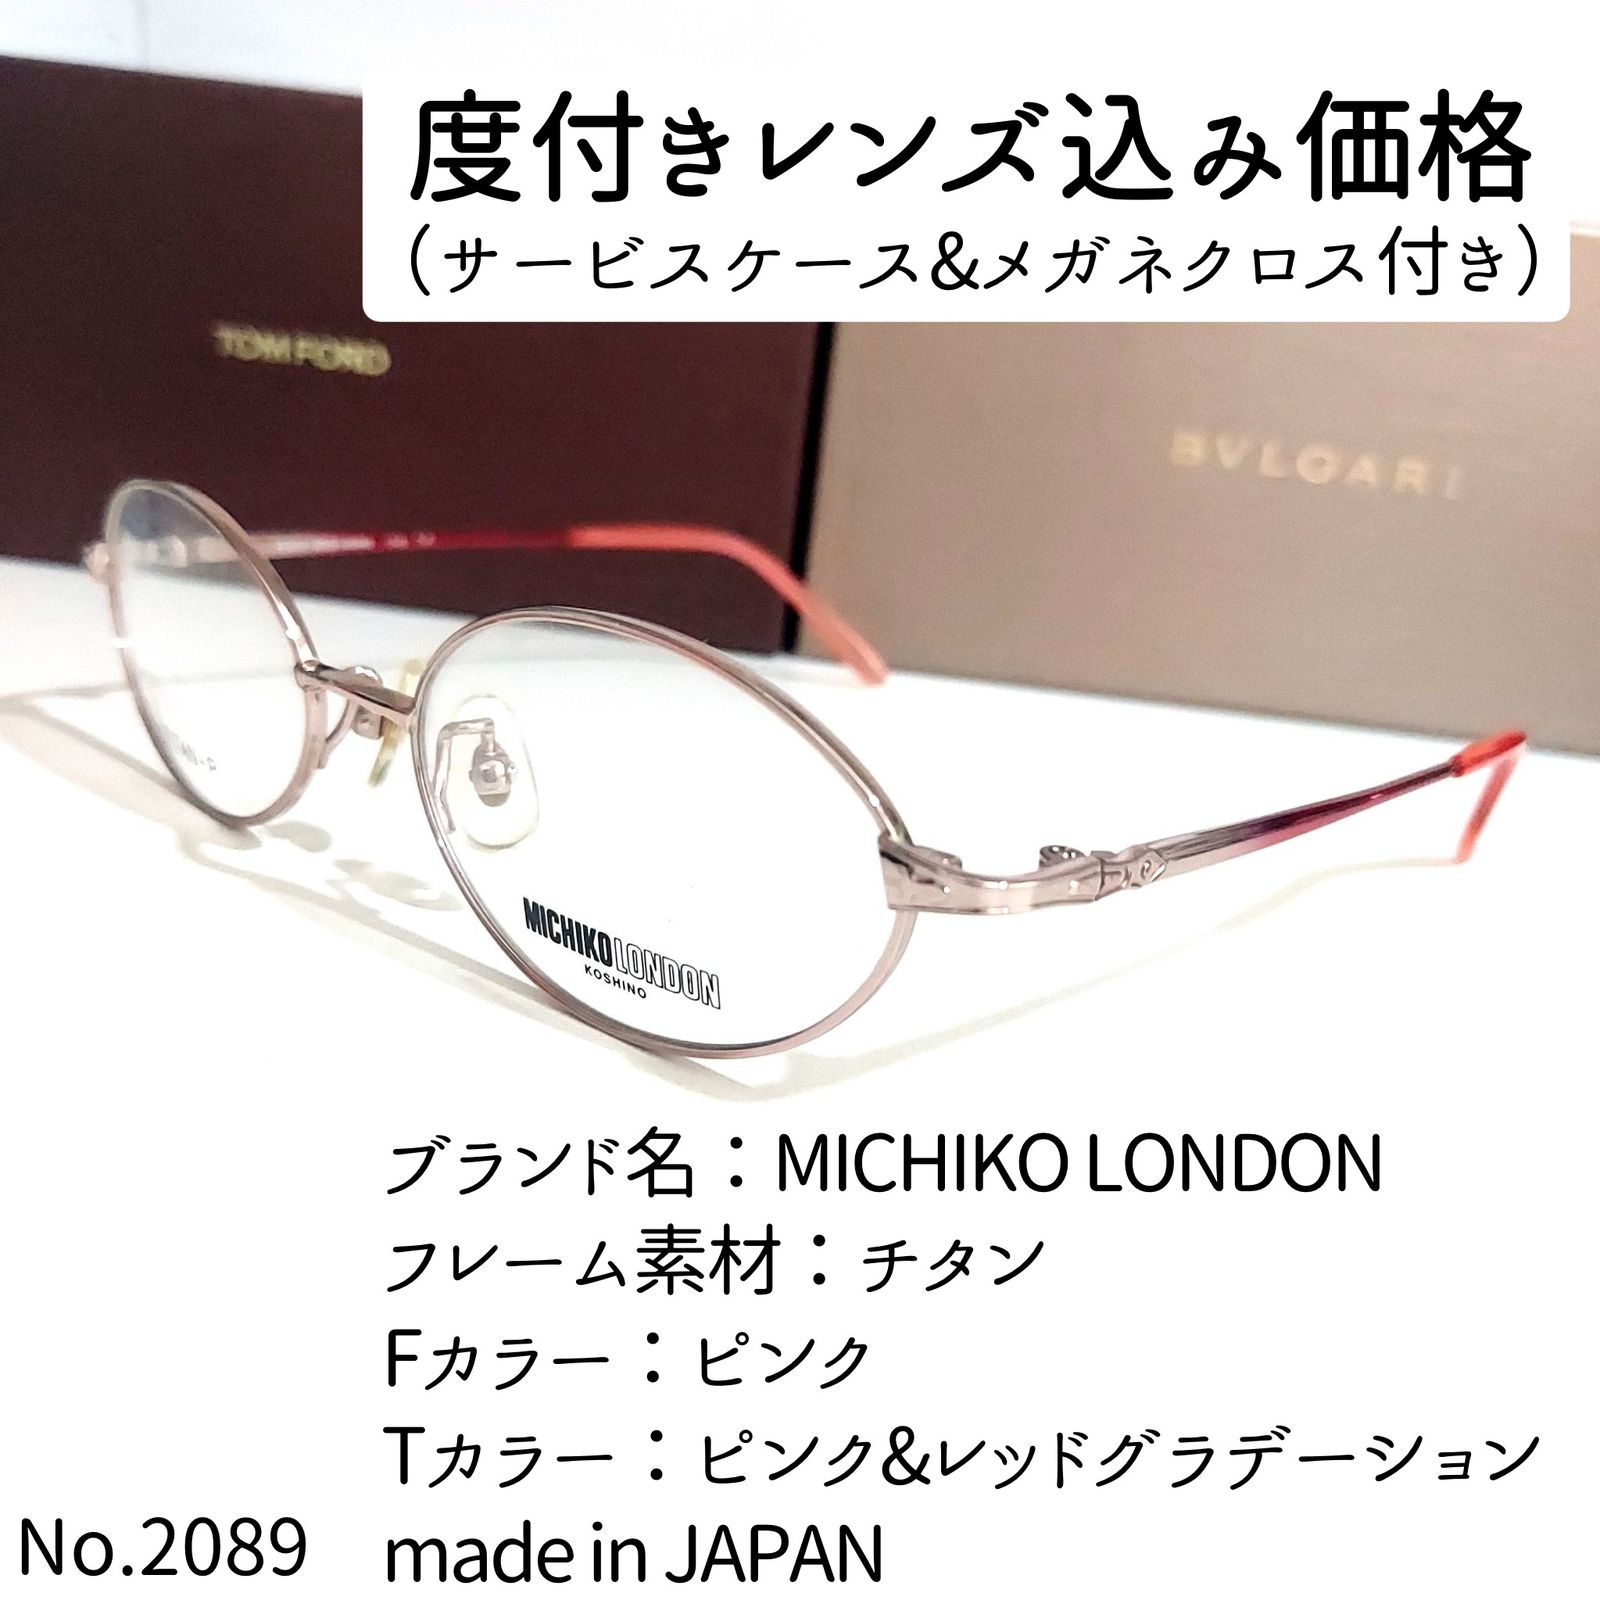 No.2089-メガネ MICHIKO LONDON【フレームのみ価格】-